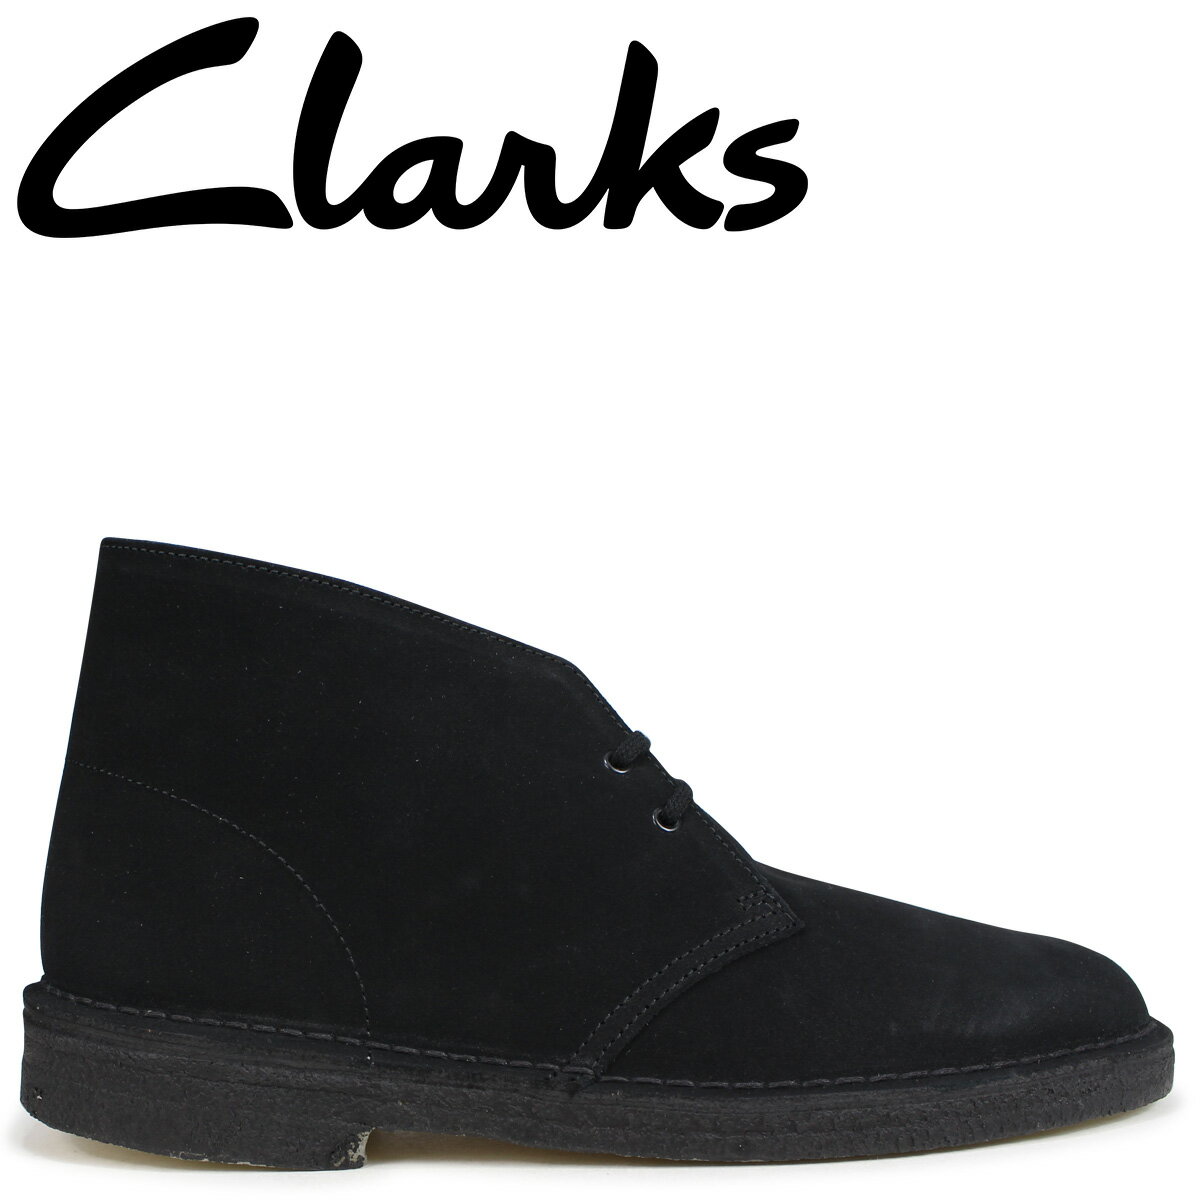 【最大1000円OFFクーポン配布中】 Clarks Originals デザートブーツ メンズ クラークス DESERT BOOT オリジナルズ Mワイズ 26107882